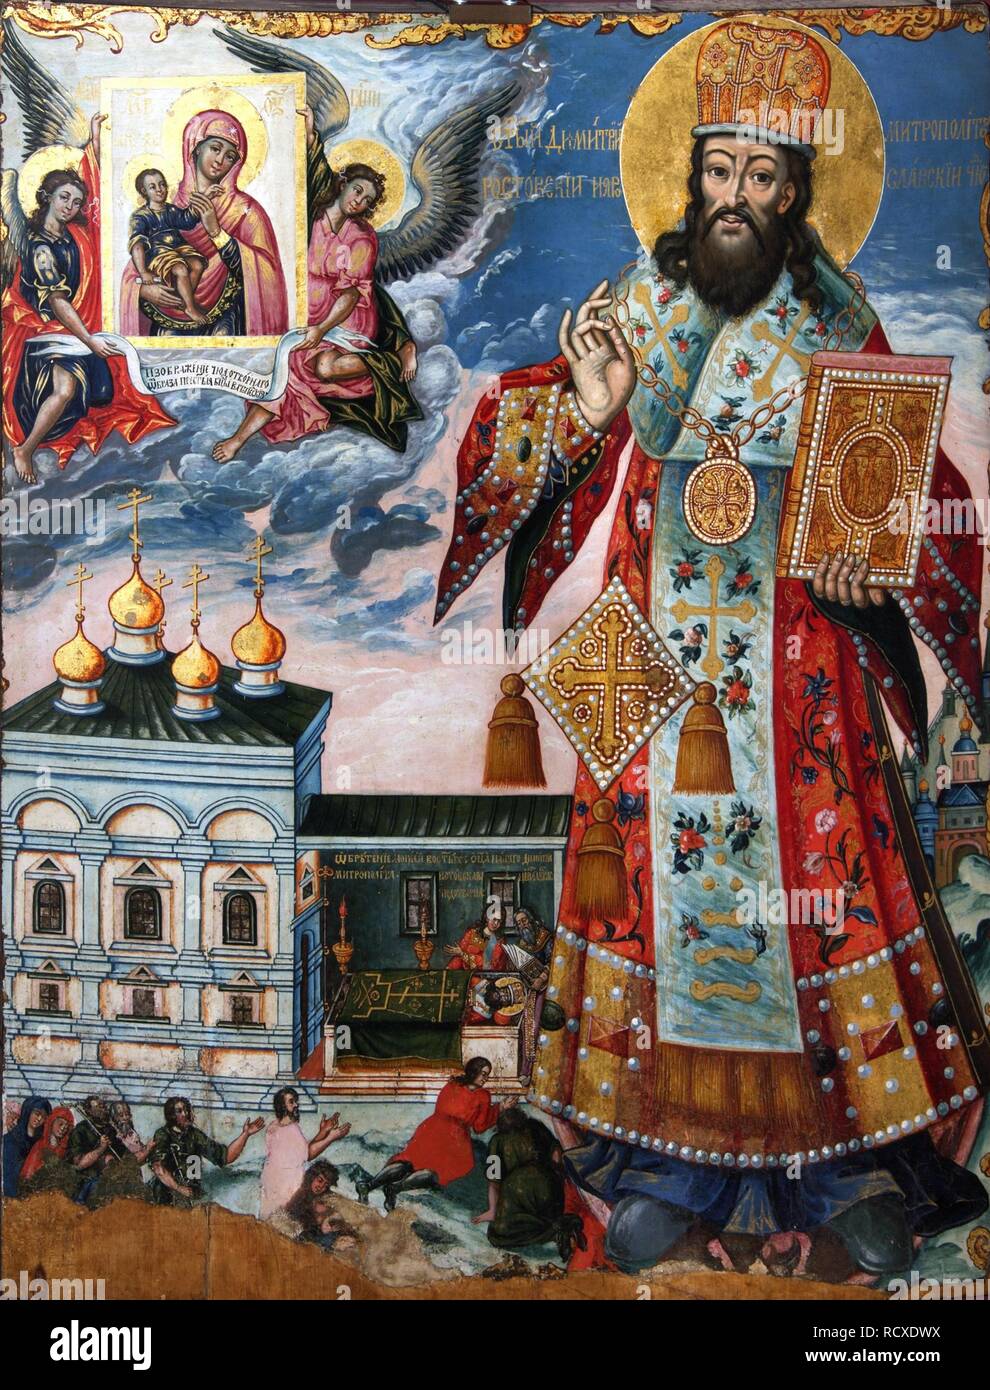 Saint Dimitry von Rostov. Museum: Staatliche Tretjakow-Galerie, Moskau. Thema: russische Ikone. Stockfoto